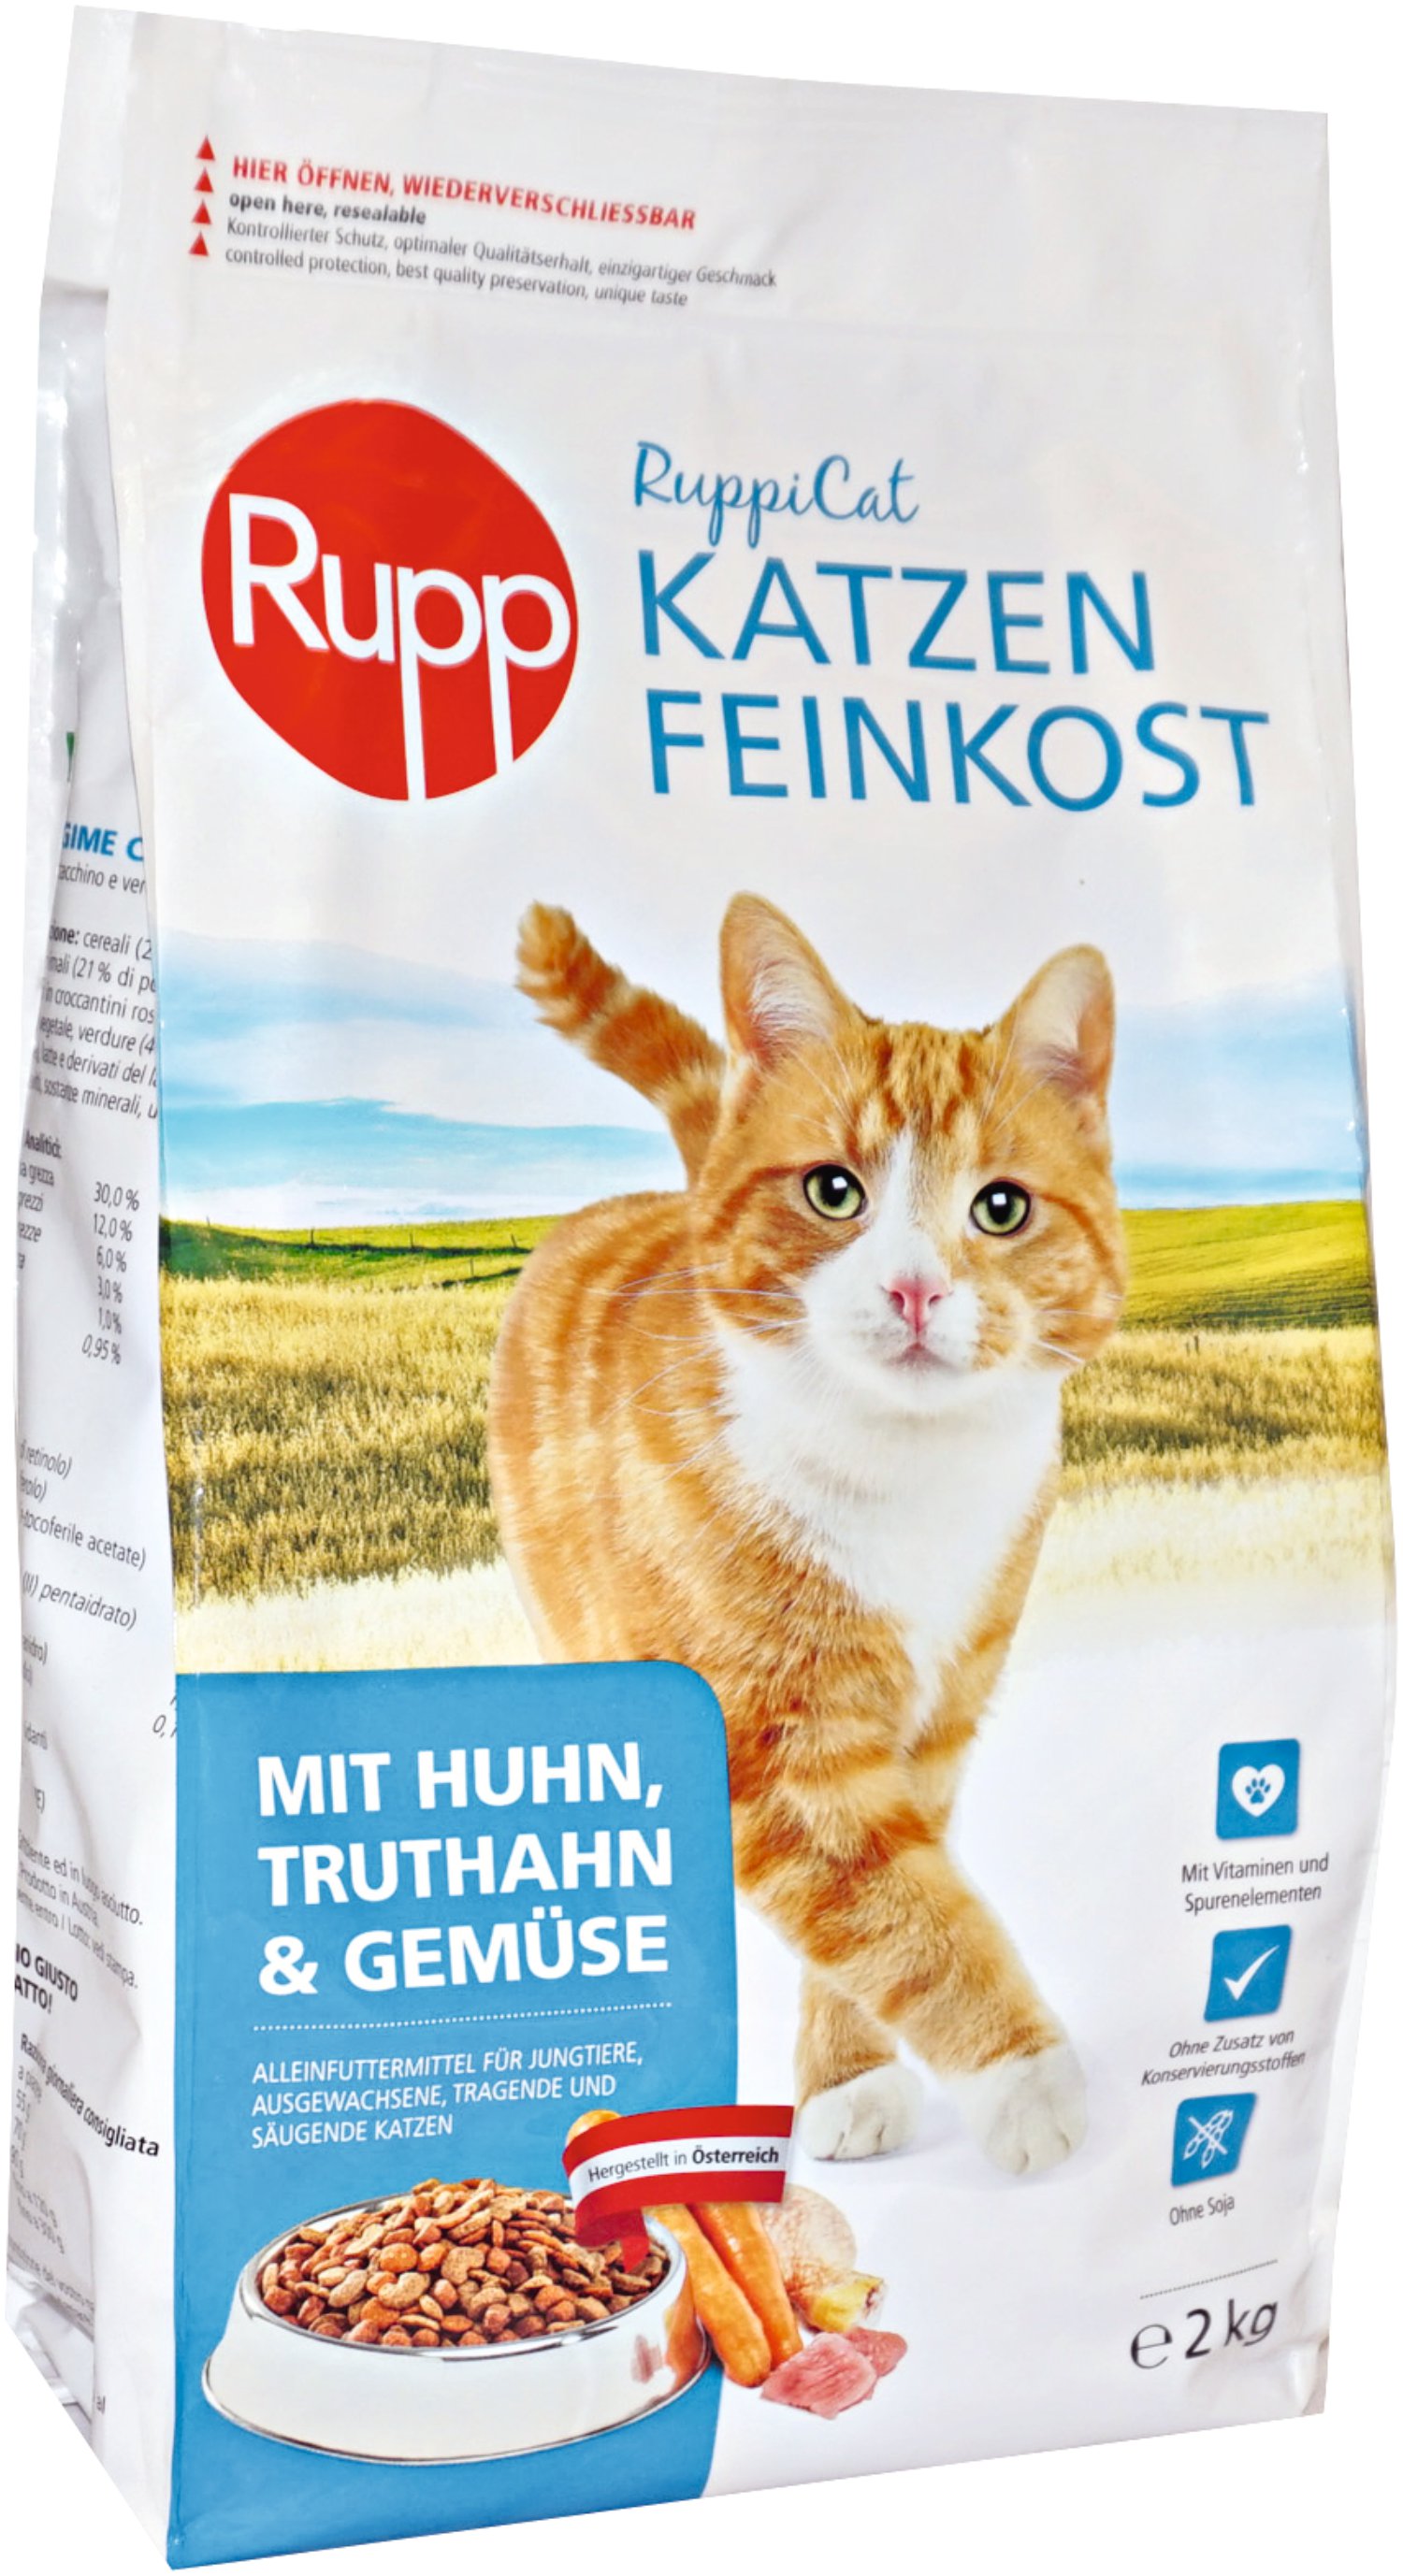 RUPPI-CAT Katzen-Feinkost Huhn 2 kg